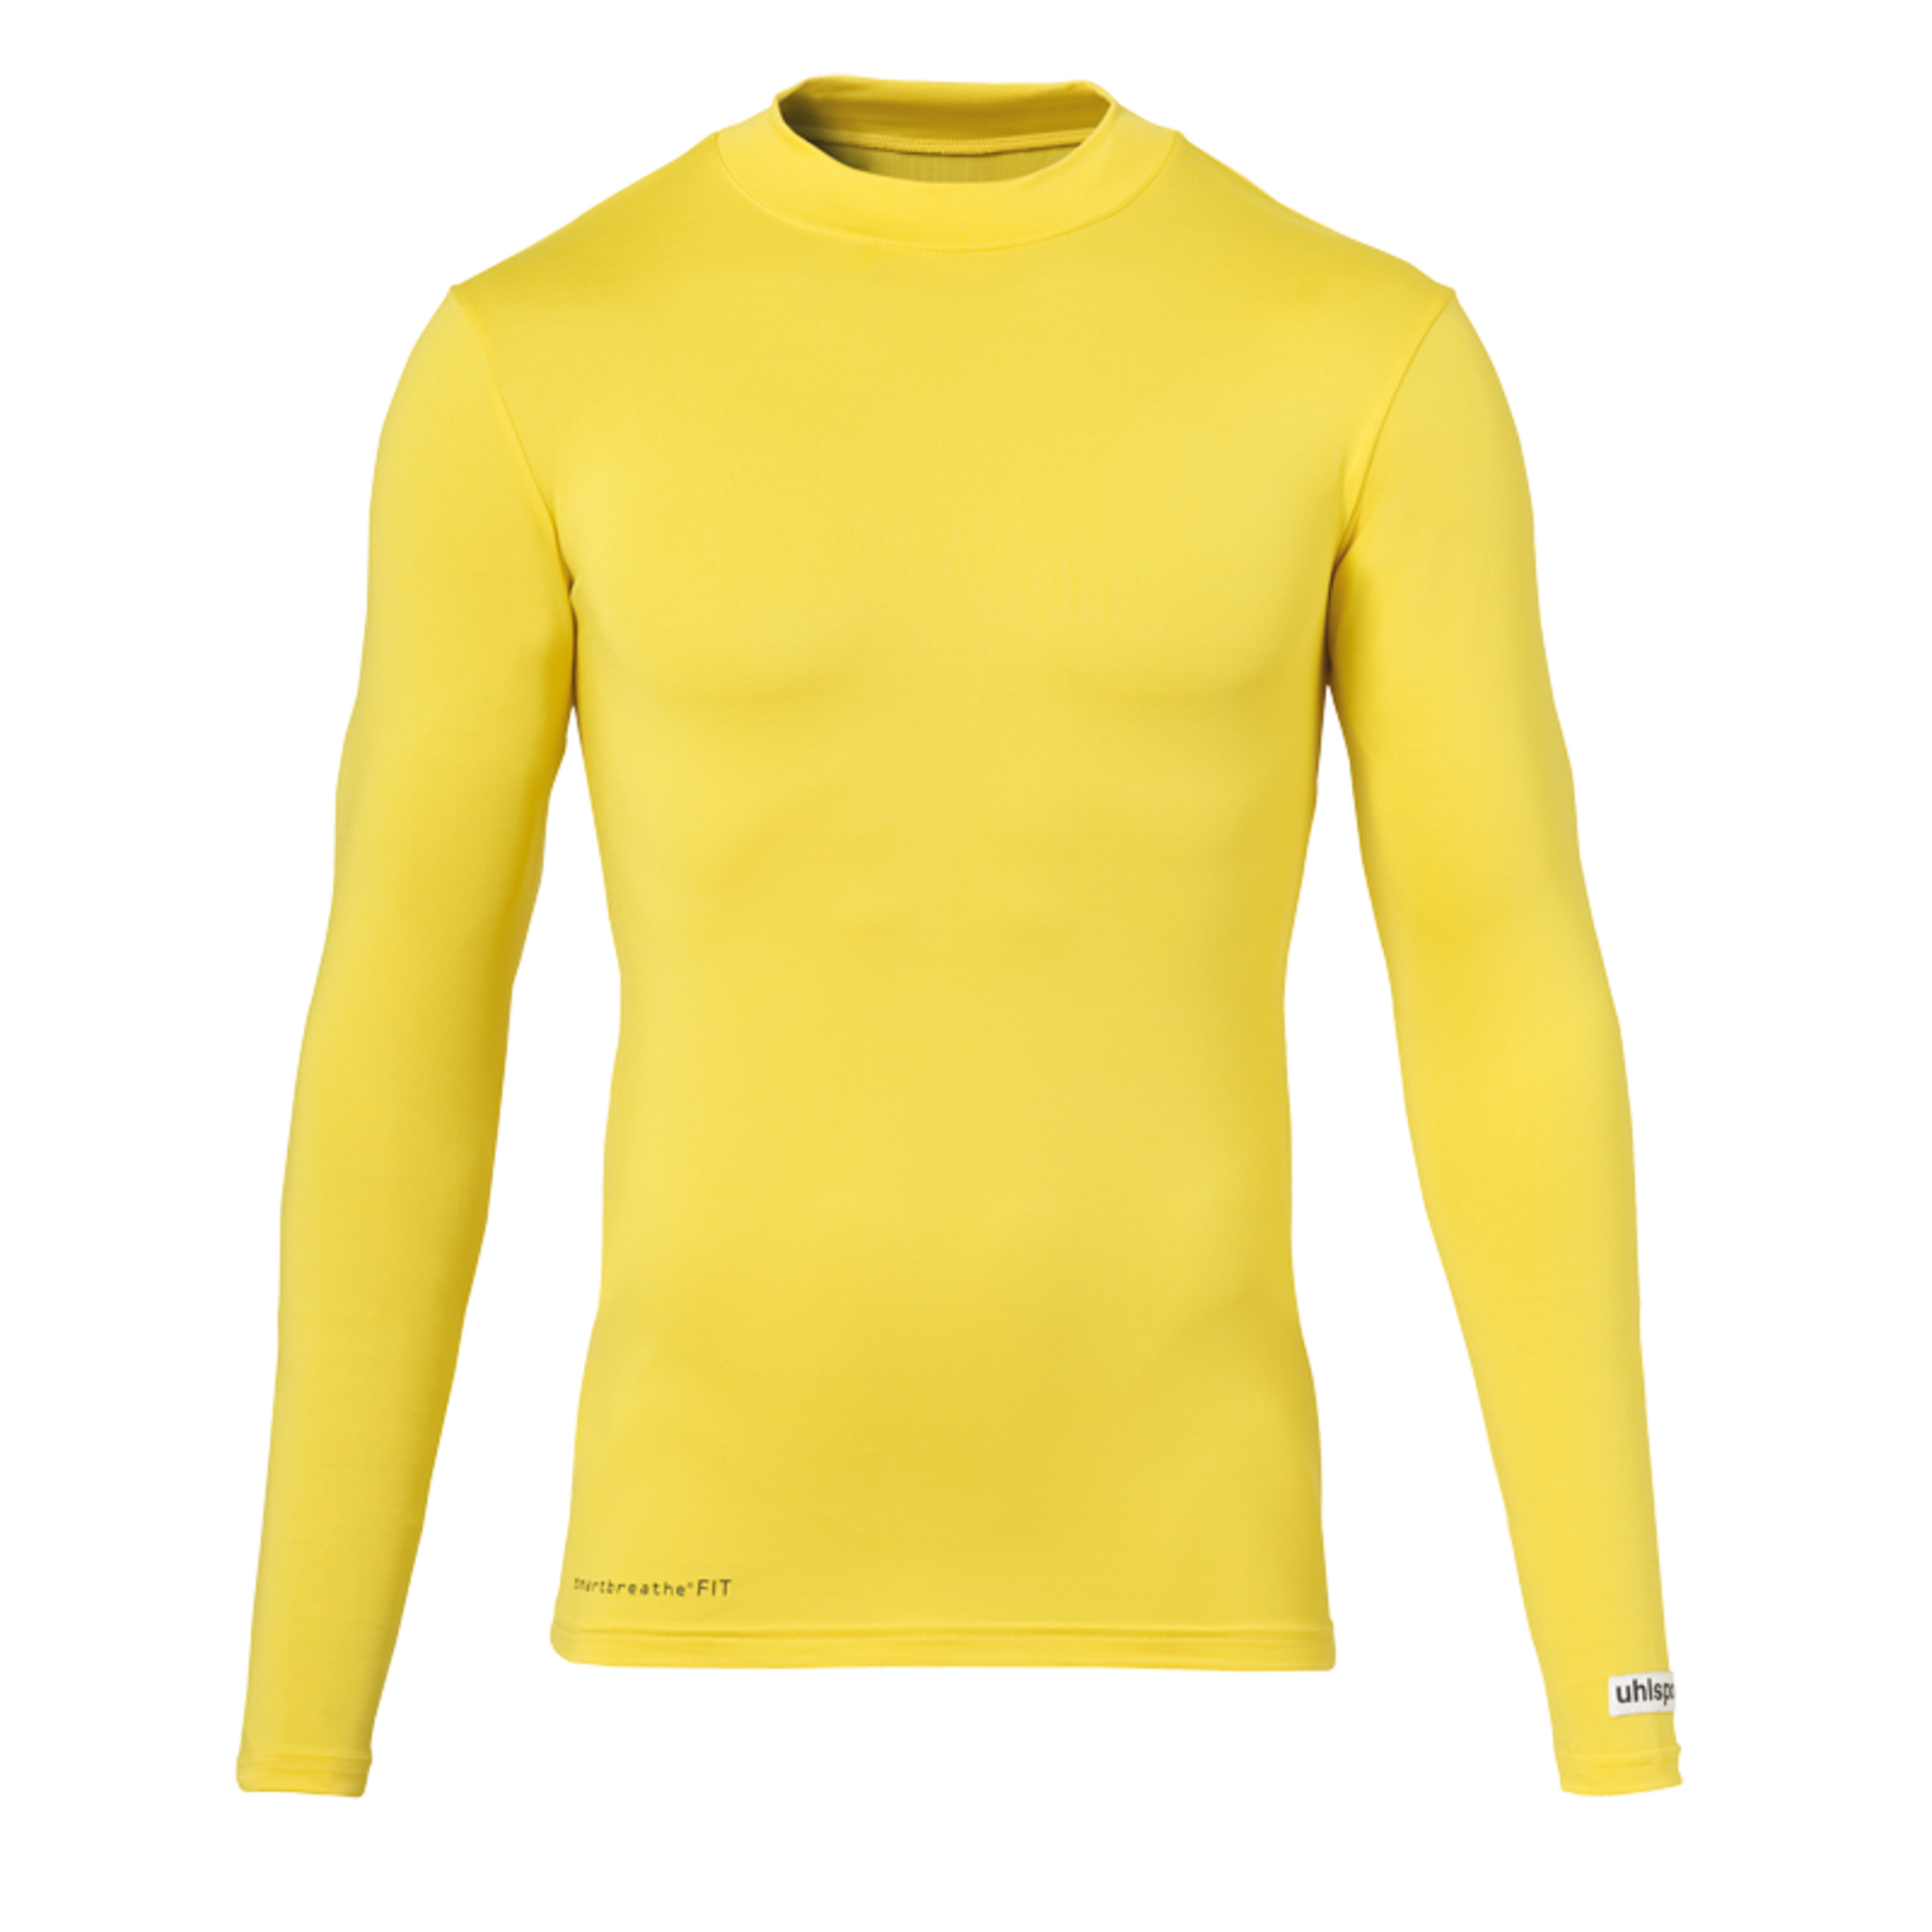 Uhlsport Baselayer Shirt Ls Amarillo Maiz Uhlsport - amarillo - 